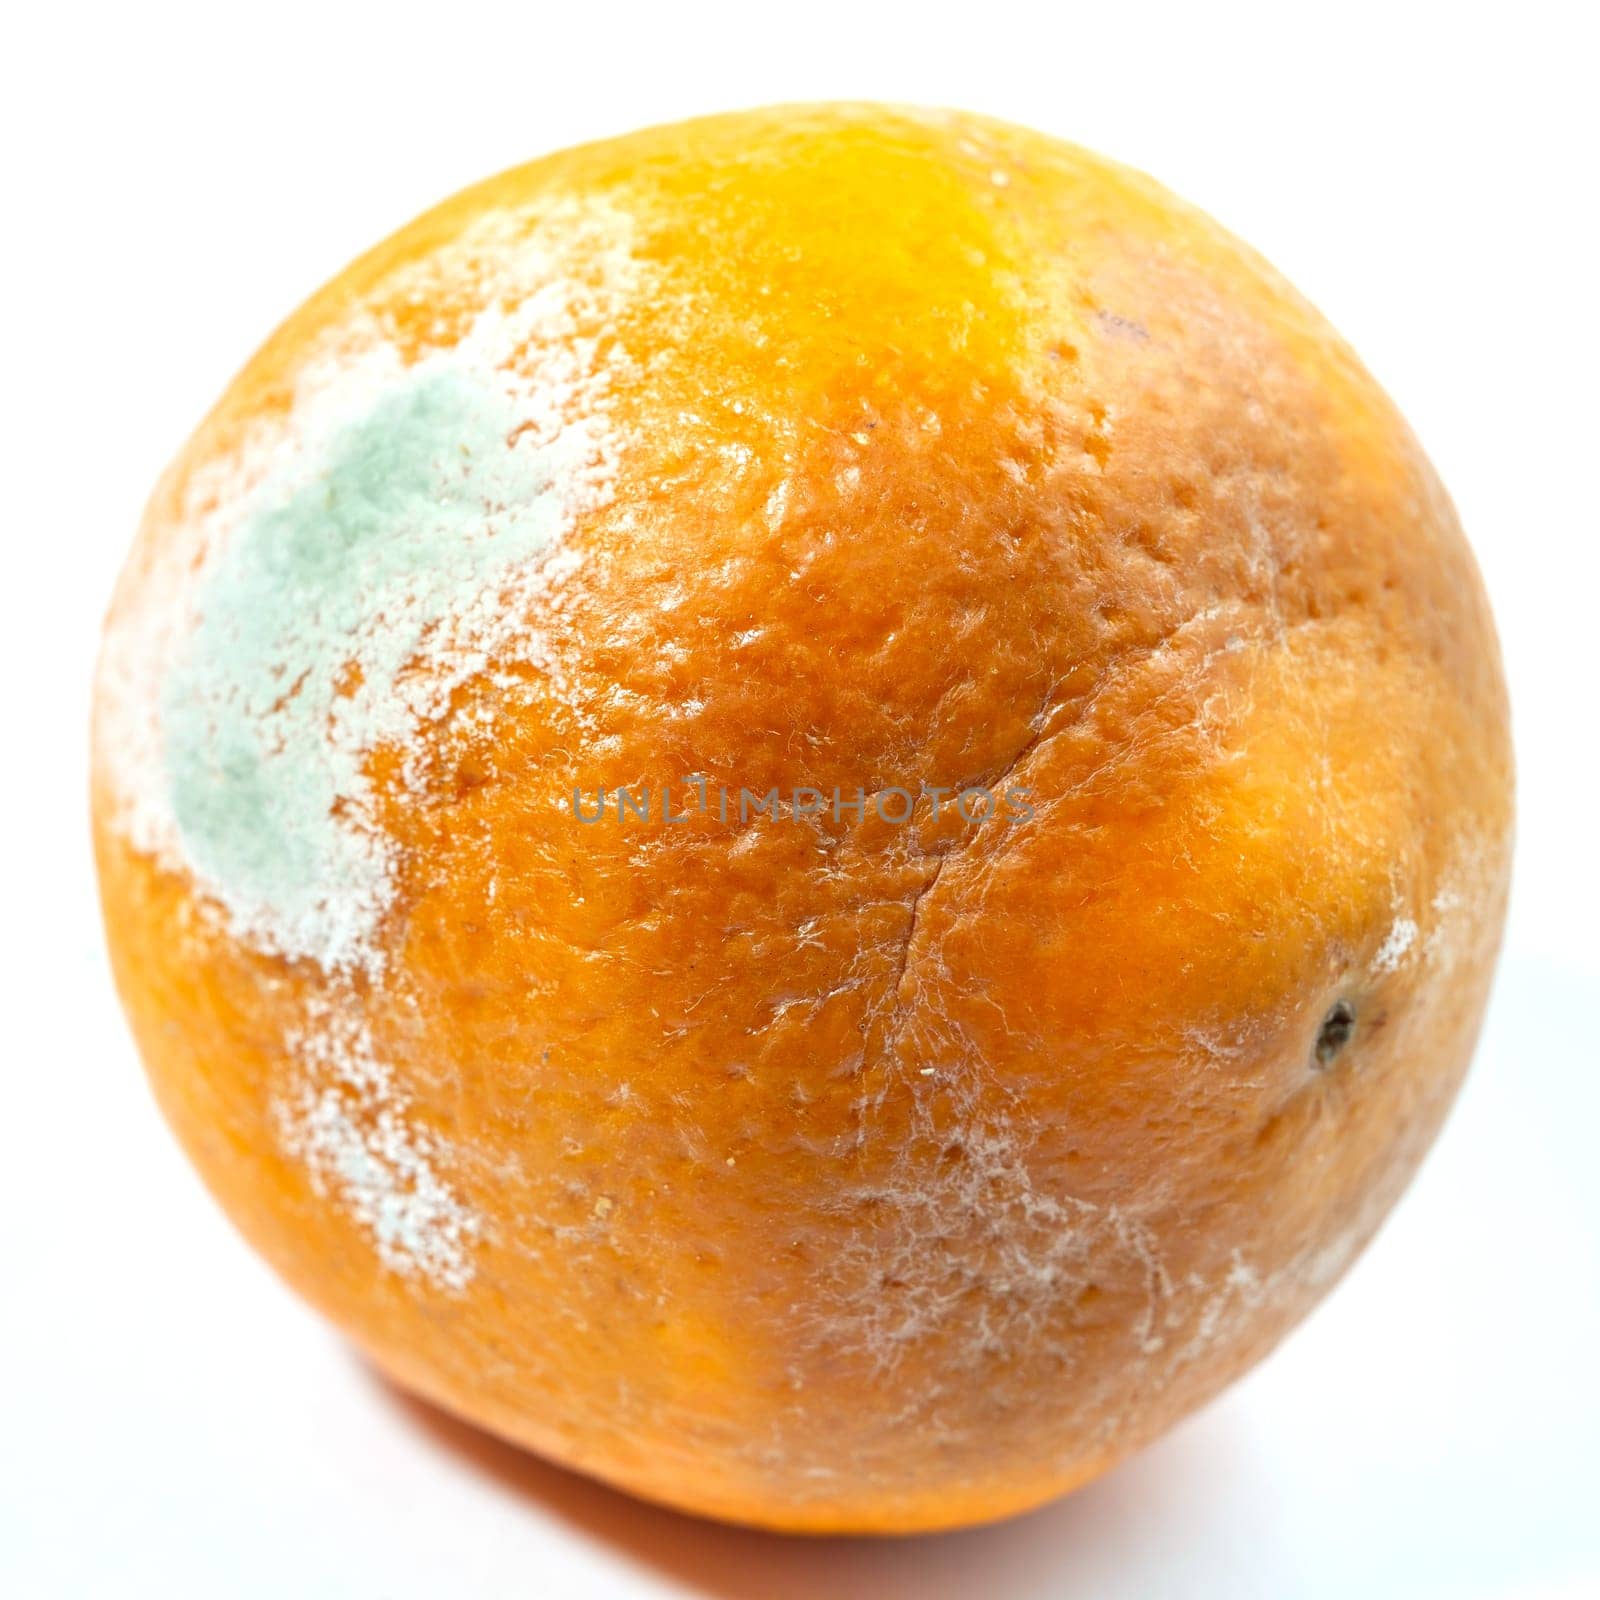 A moldy orange on a white background by Serhii_Voroshchuk